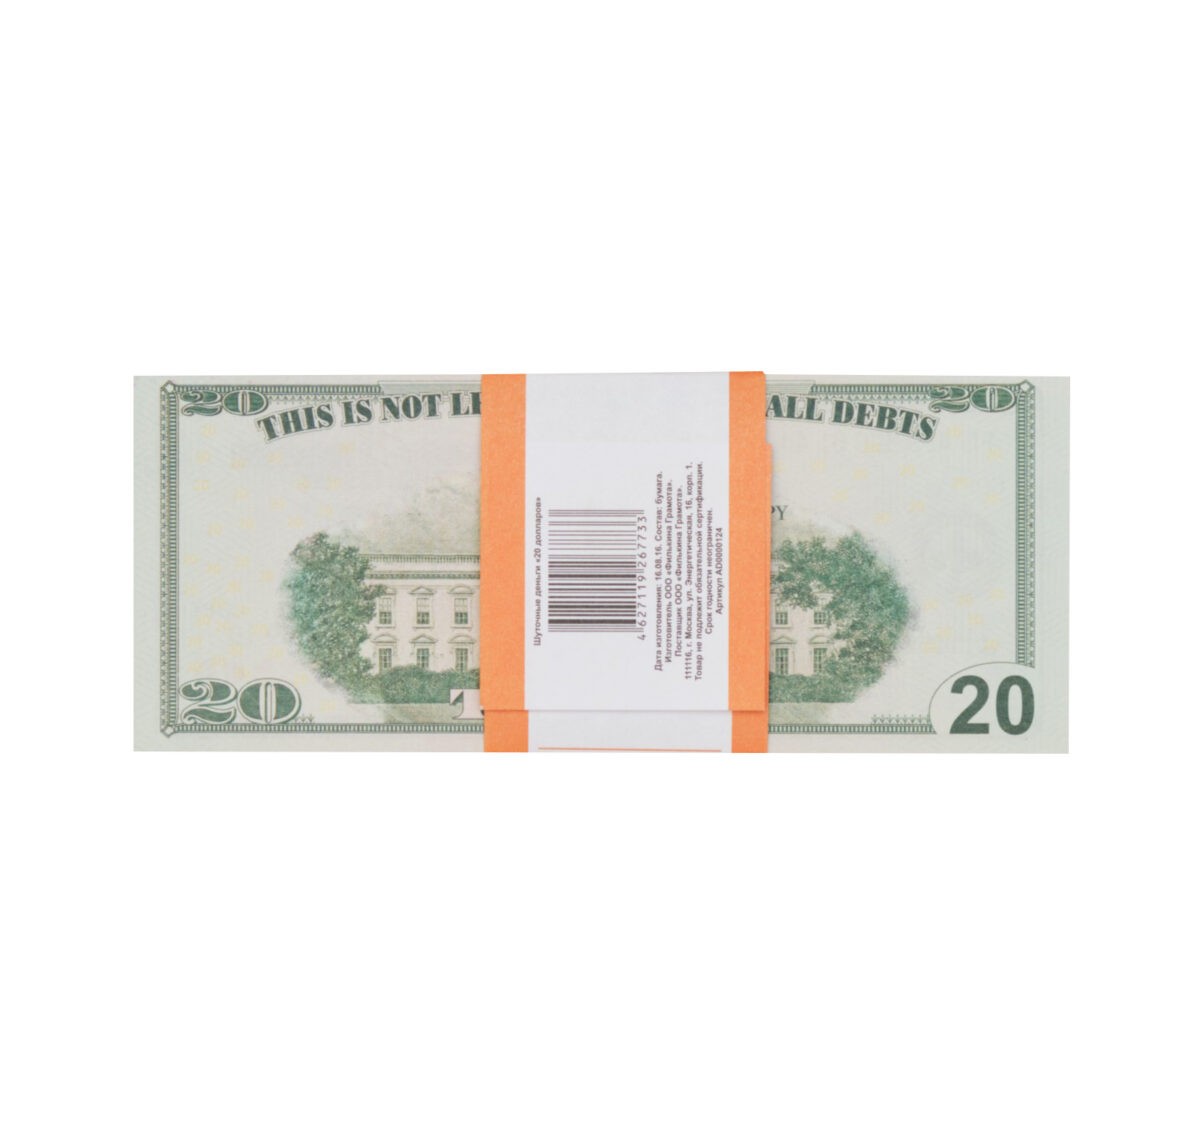 20 US dollars prop money stack